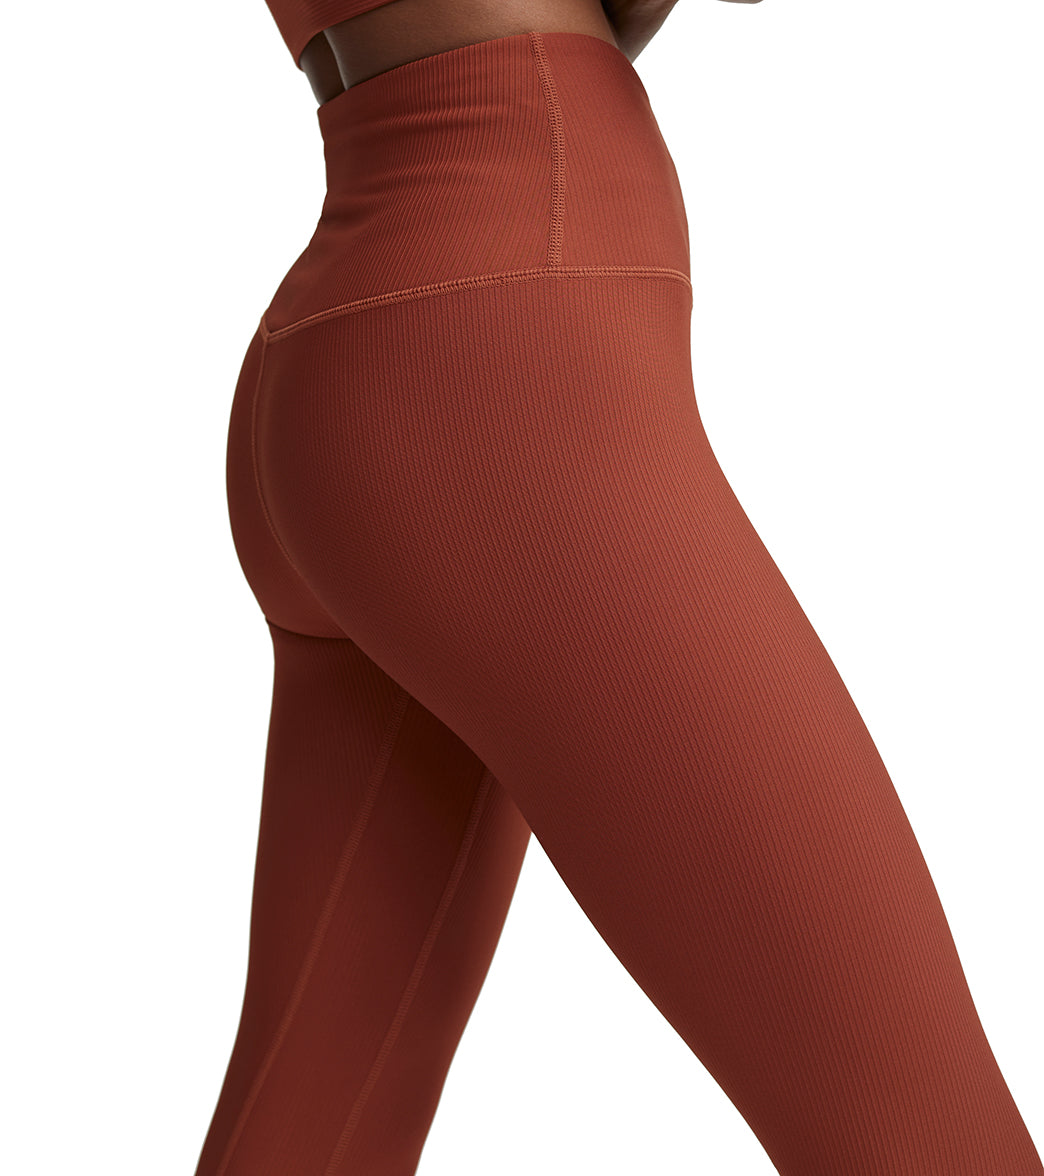 Luna high-rise leggings in red - Varley